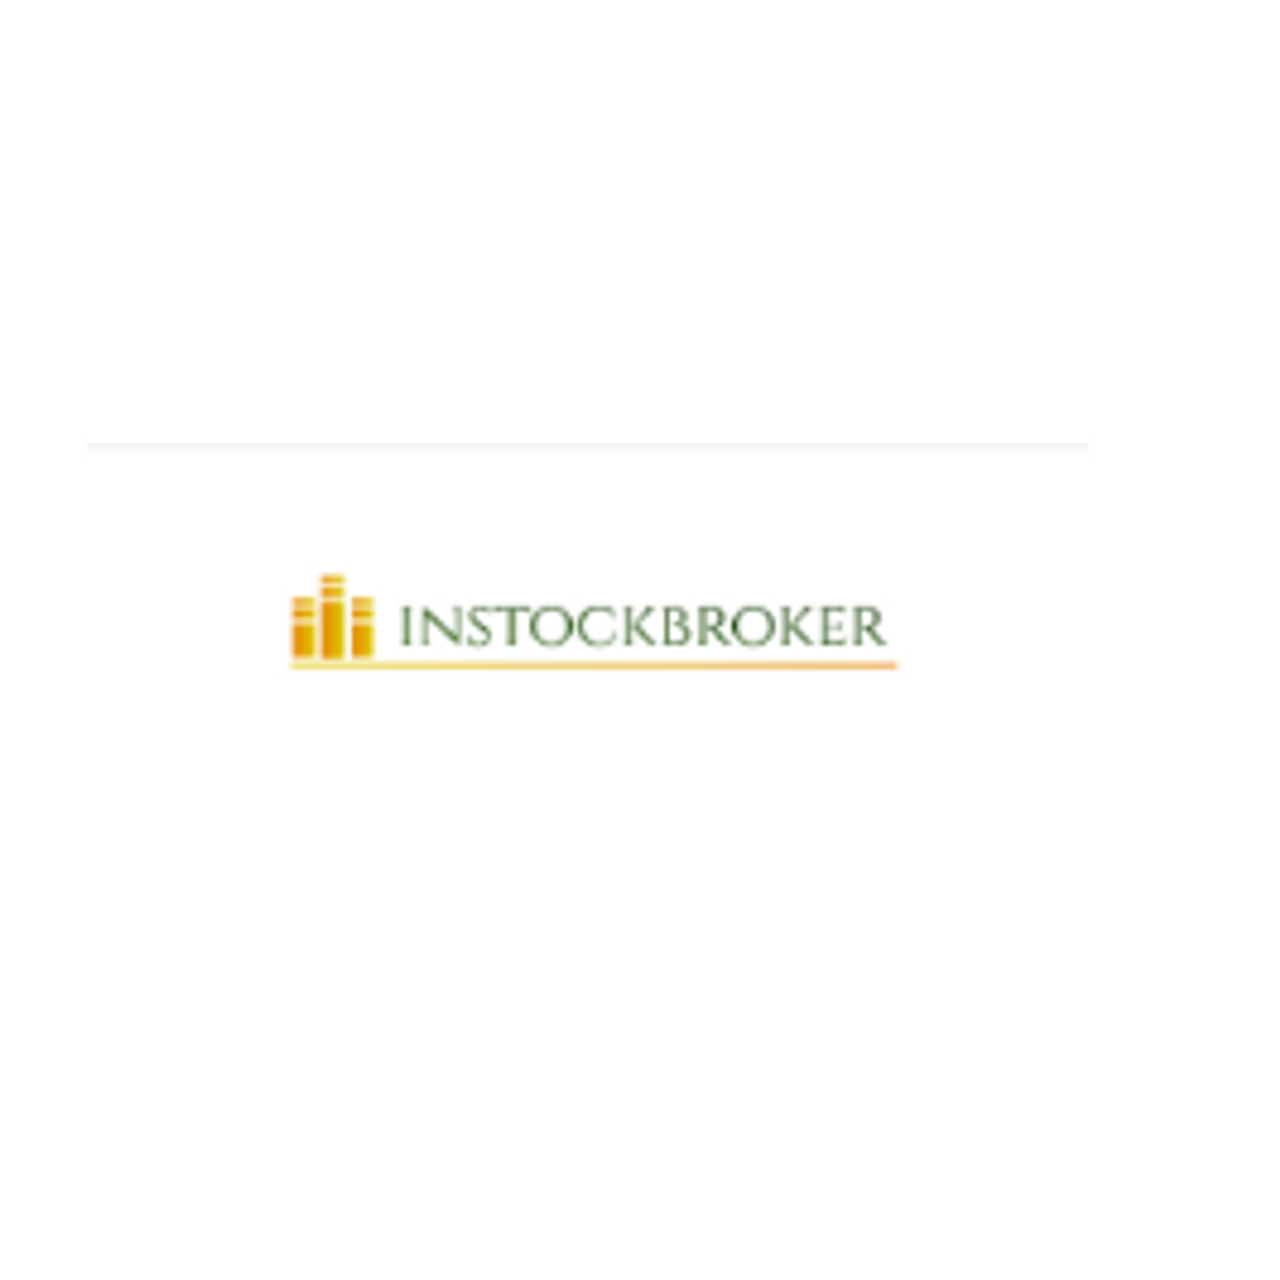 instockbroker